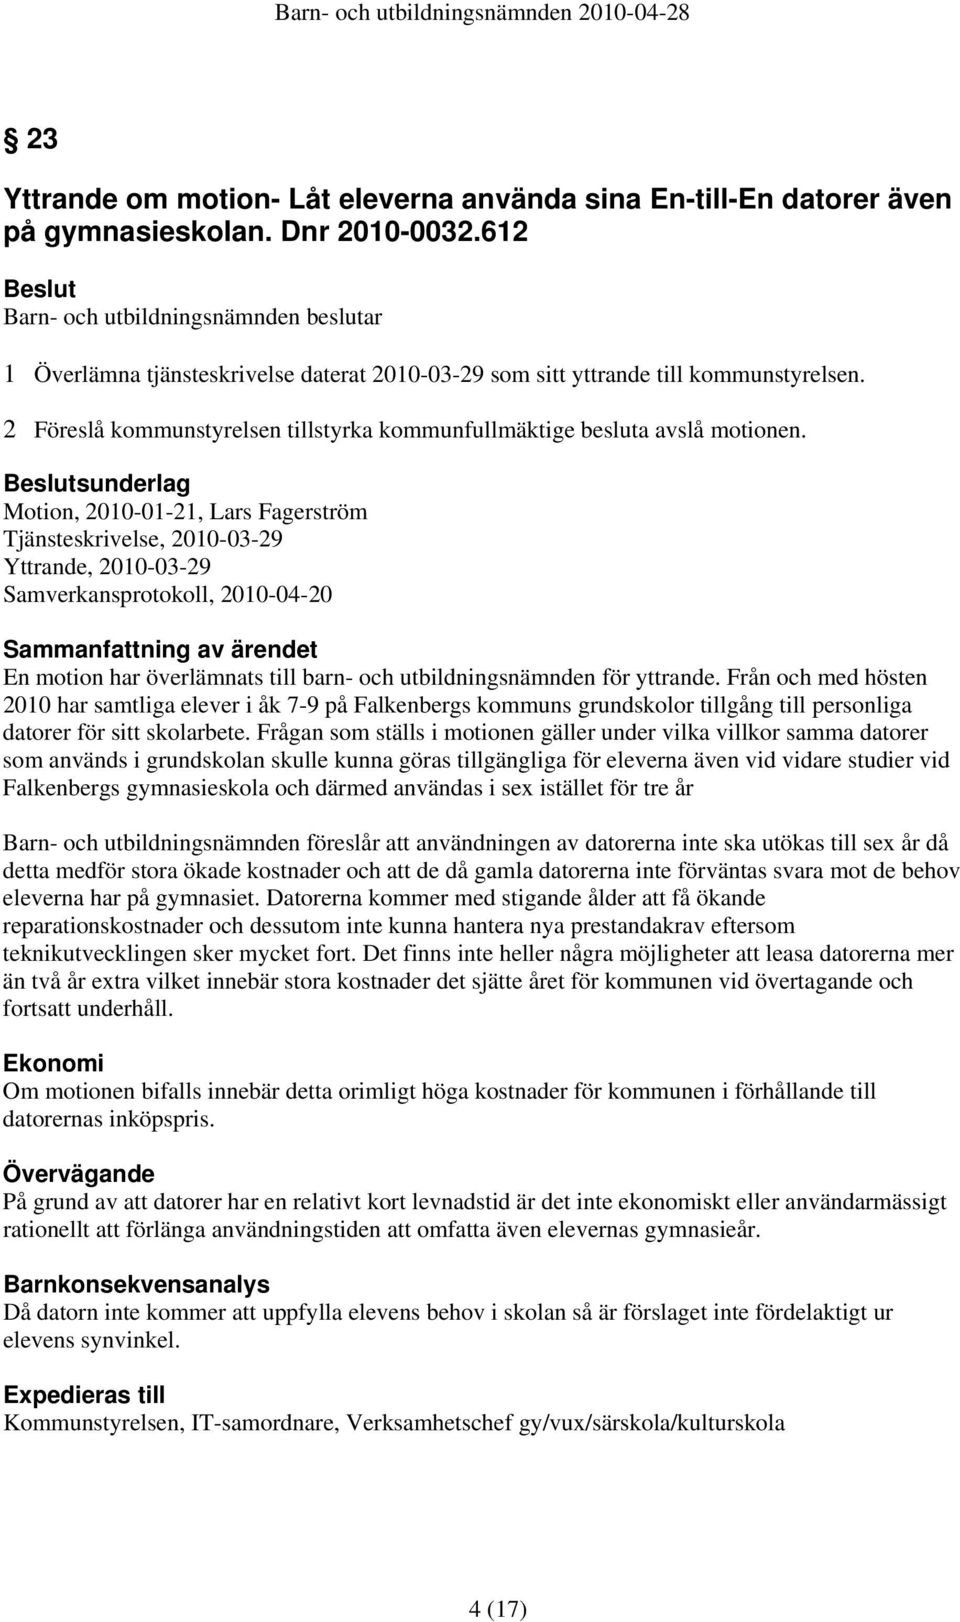 sunderlag Motion, 2010-01-21, Lars Fagerström Tjänsteskrivelse, 2010-03-29 Yttrande, 2010-03-29 Samverkansprotokoll, 2010-04-20 Sammanfattning av ärendet En motion har överlämnats till barn- och